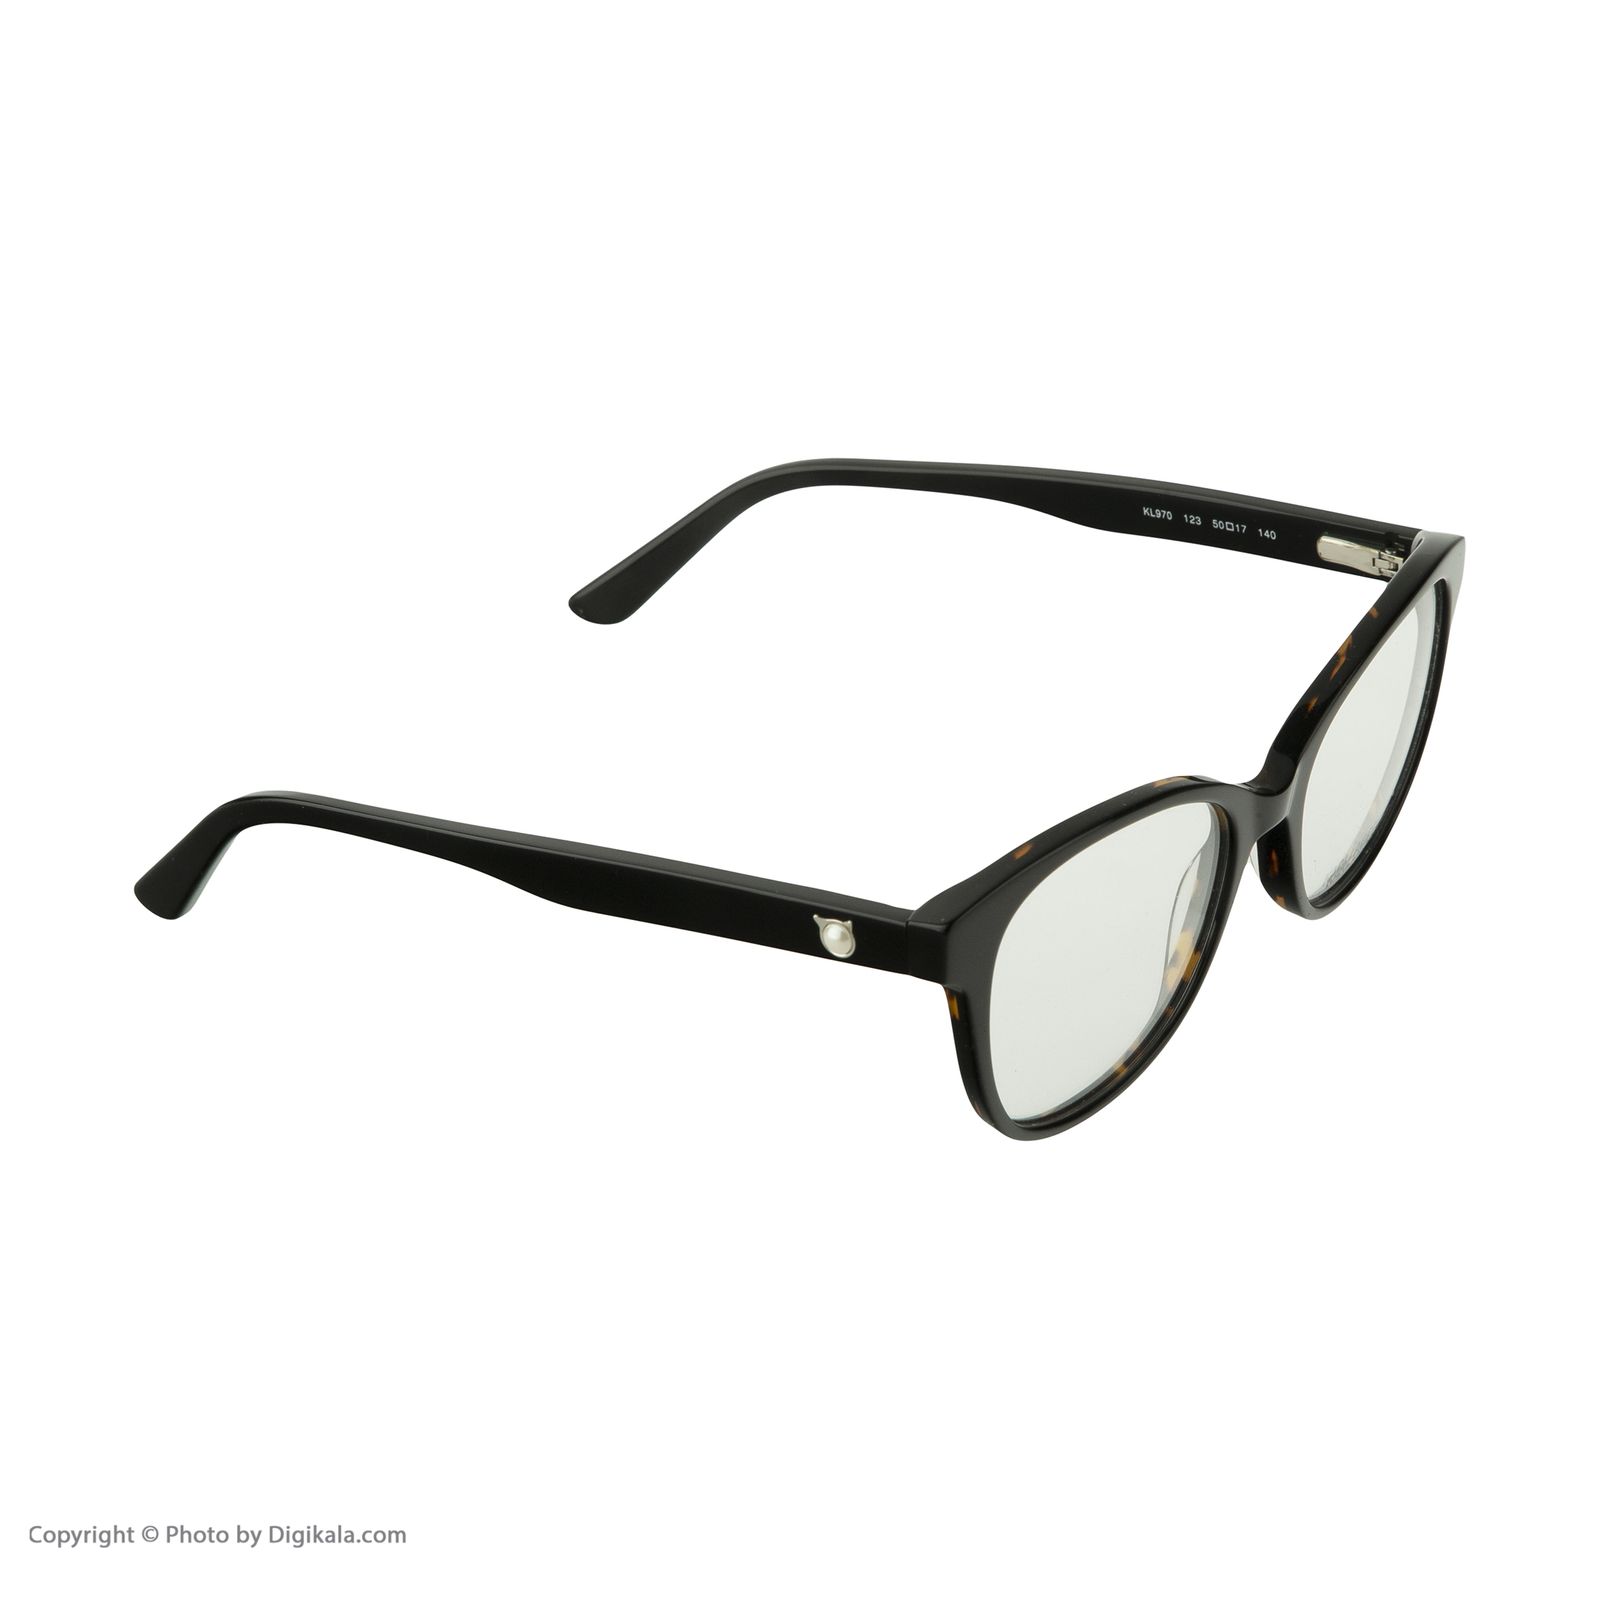 فریم عینک طبی کارل لاگرفلد مدل KL970V123 -  - 3